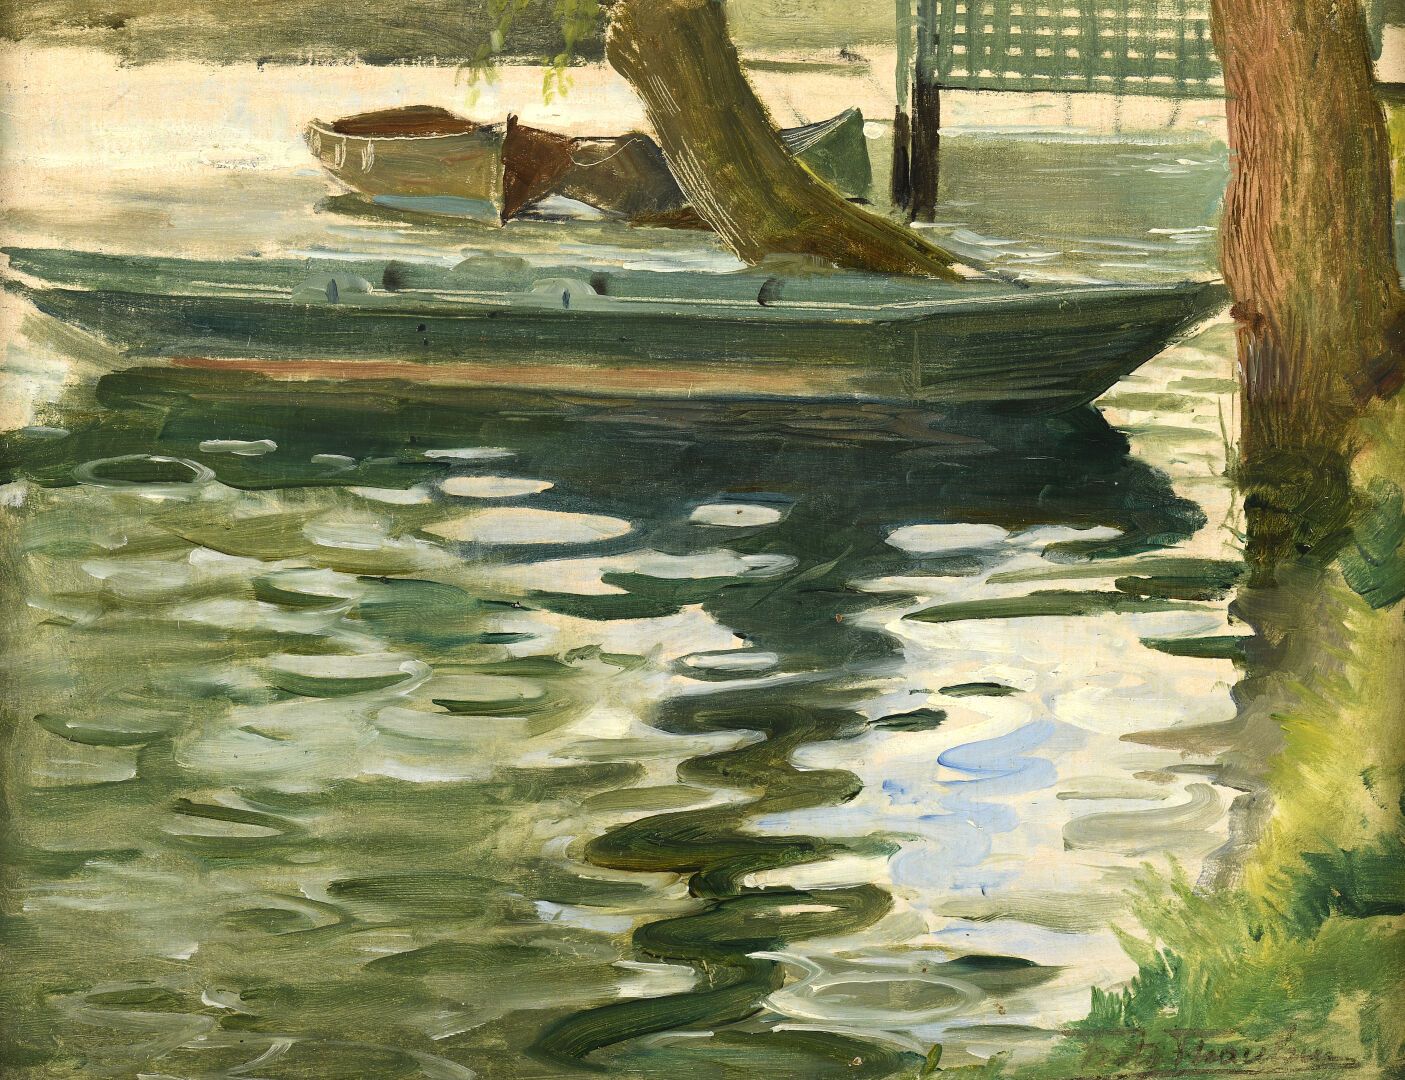 Null 弗里茨-陶乐 (1847-1906)
河边的船 
面板油画，右下角有签名。
25 x 33 cm